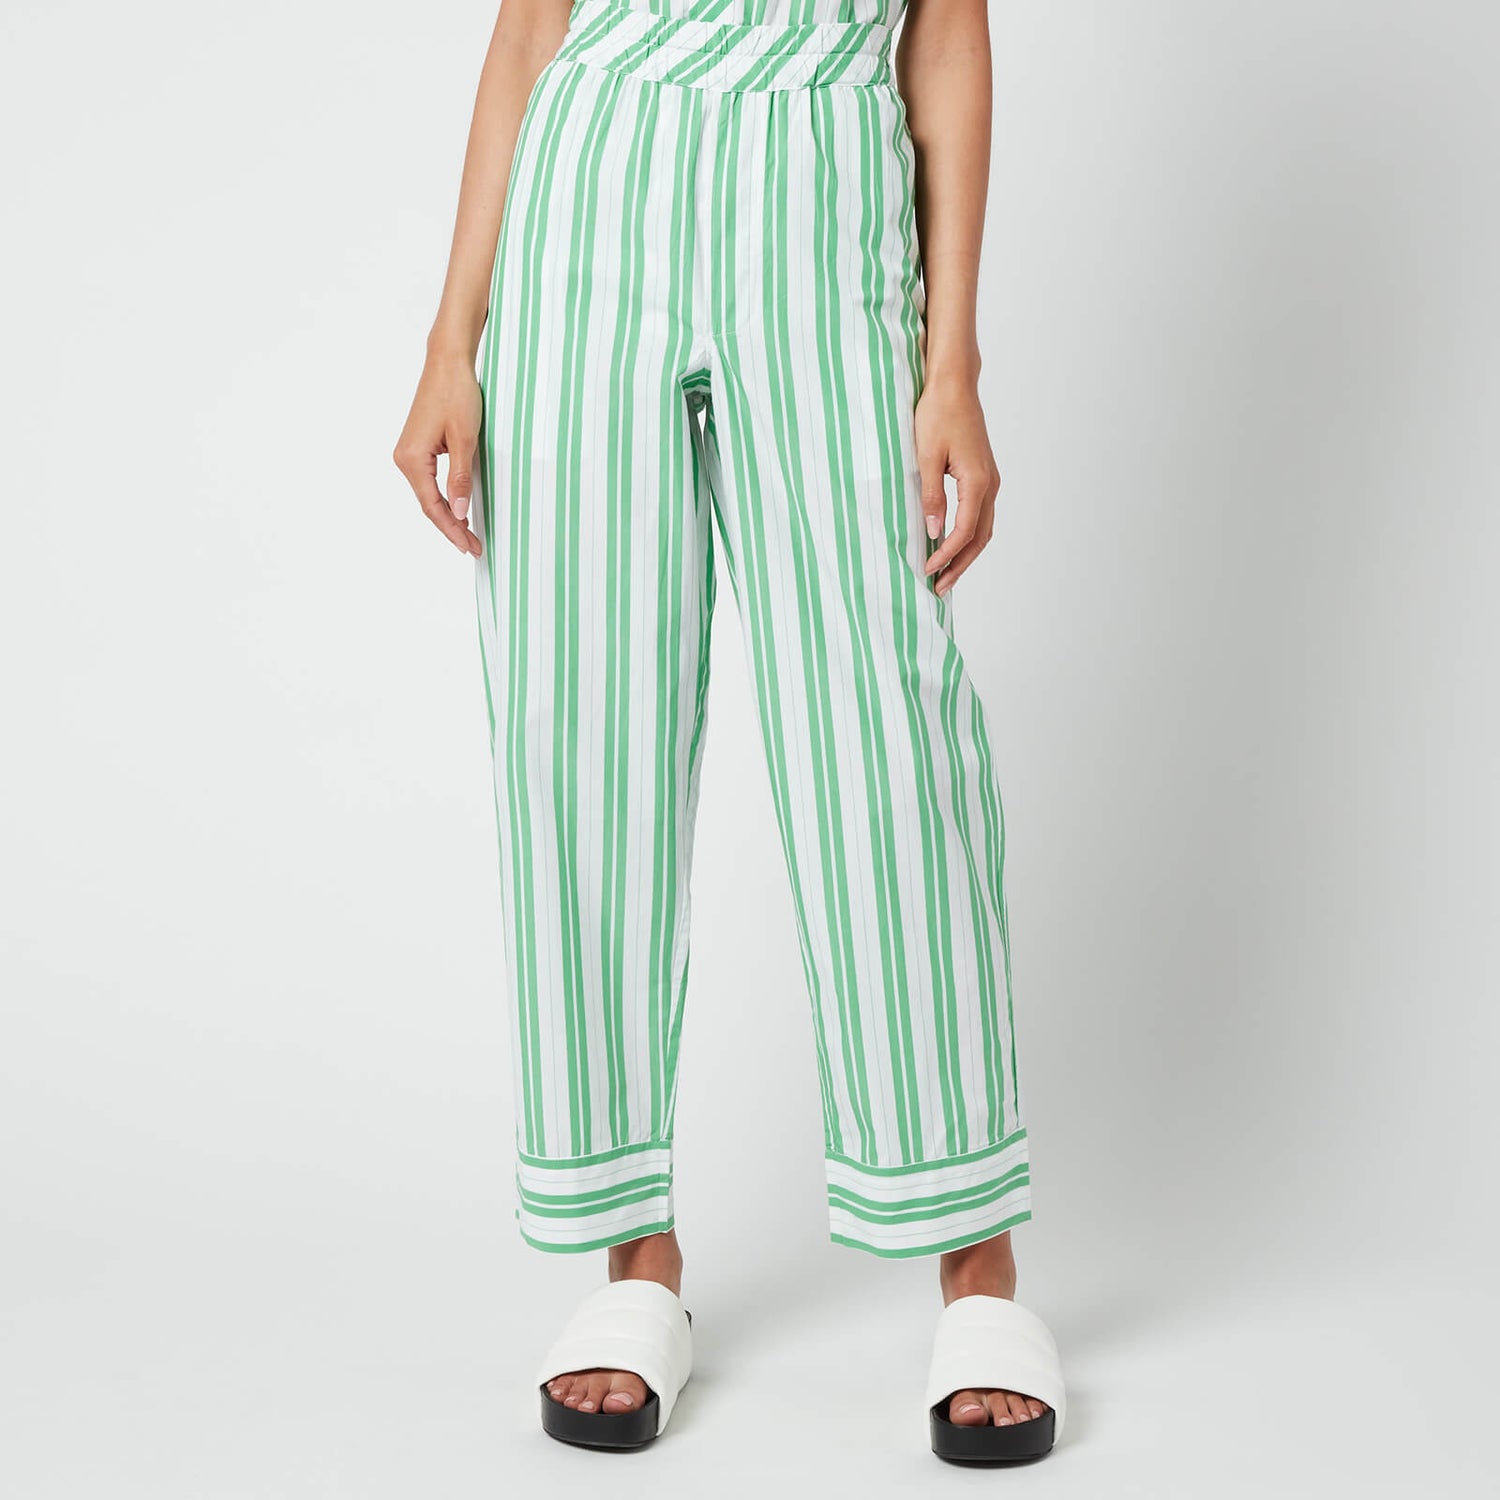 Ganni Women's Stripe Cotton Pants - Kelly Green - EU 36/UK 8